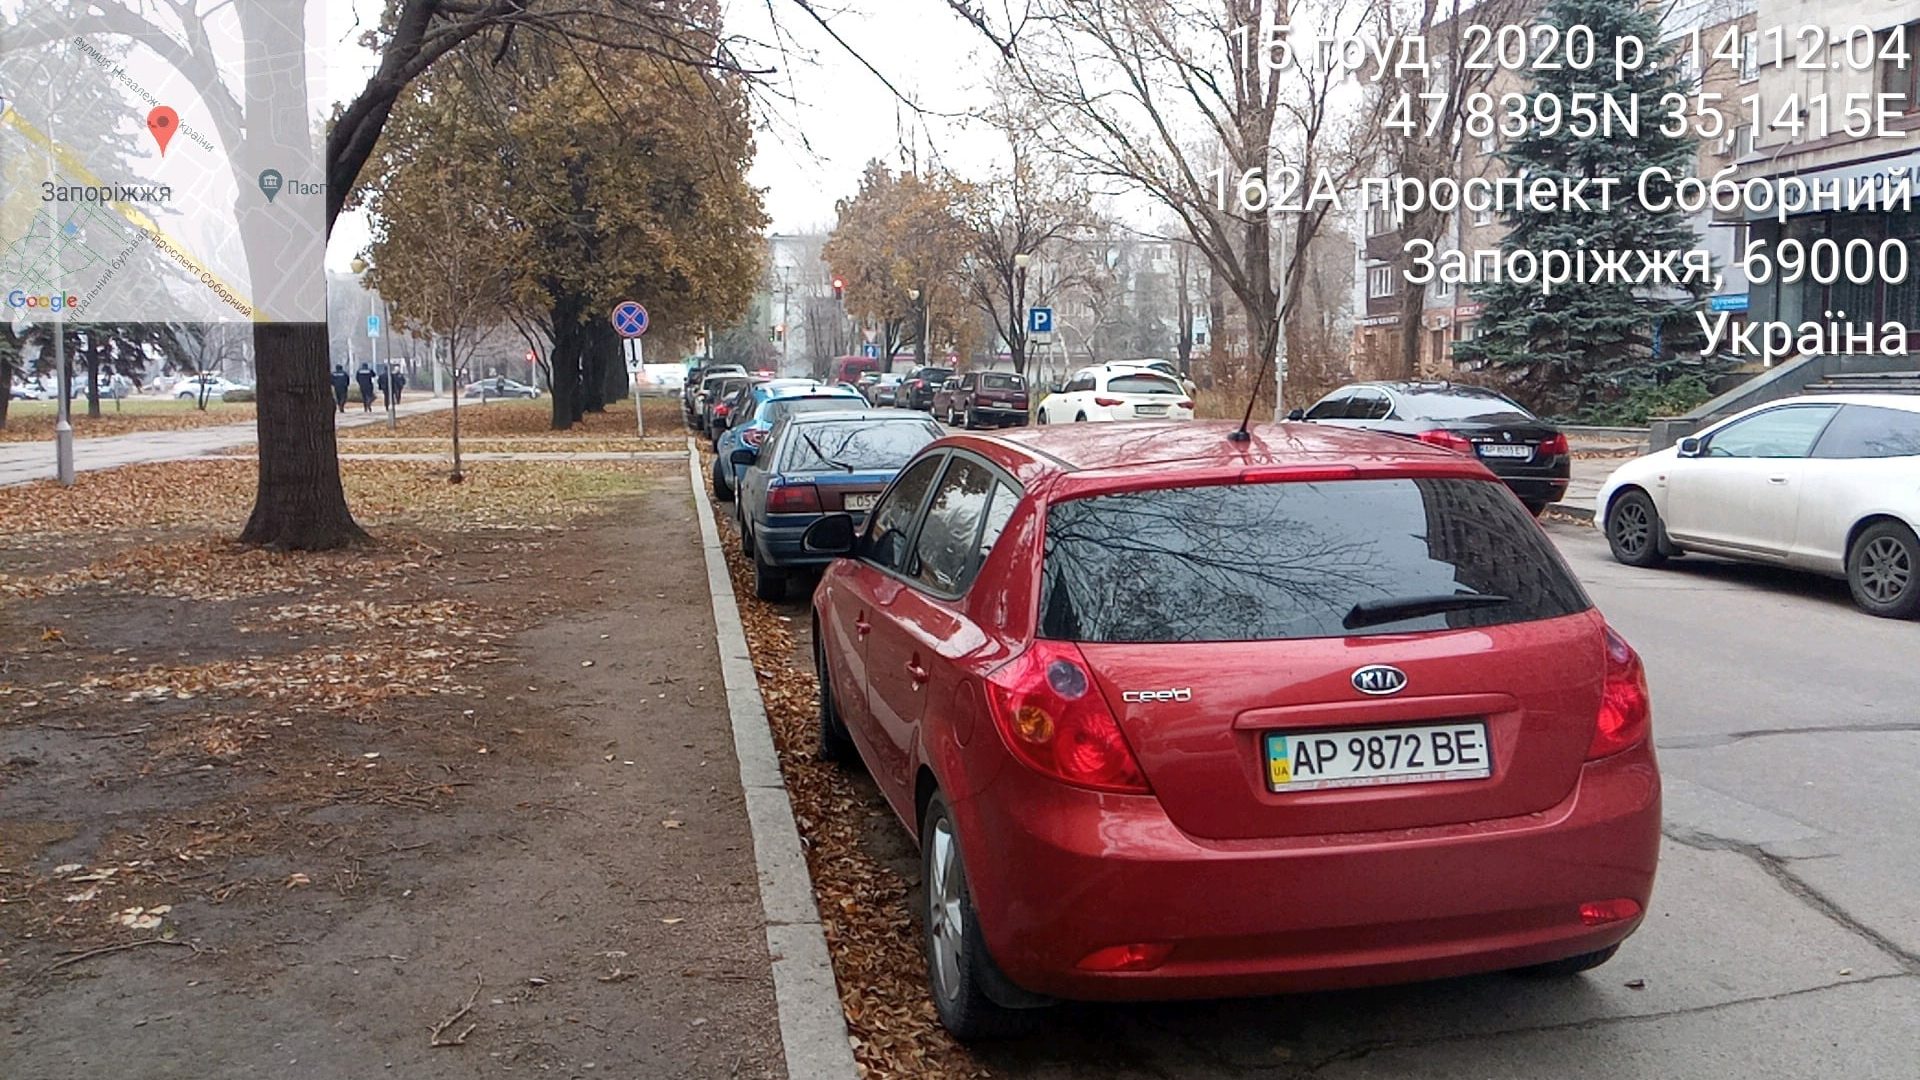 Майже два десятки водіїв, які залишили автівки в центрі Запоріжжя, отримали штрафи за неправильне паркування